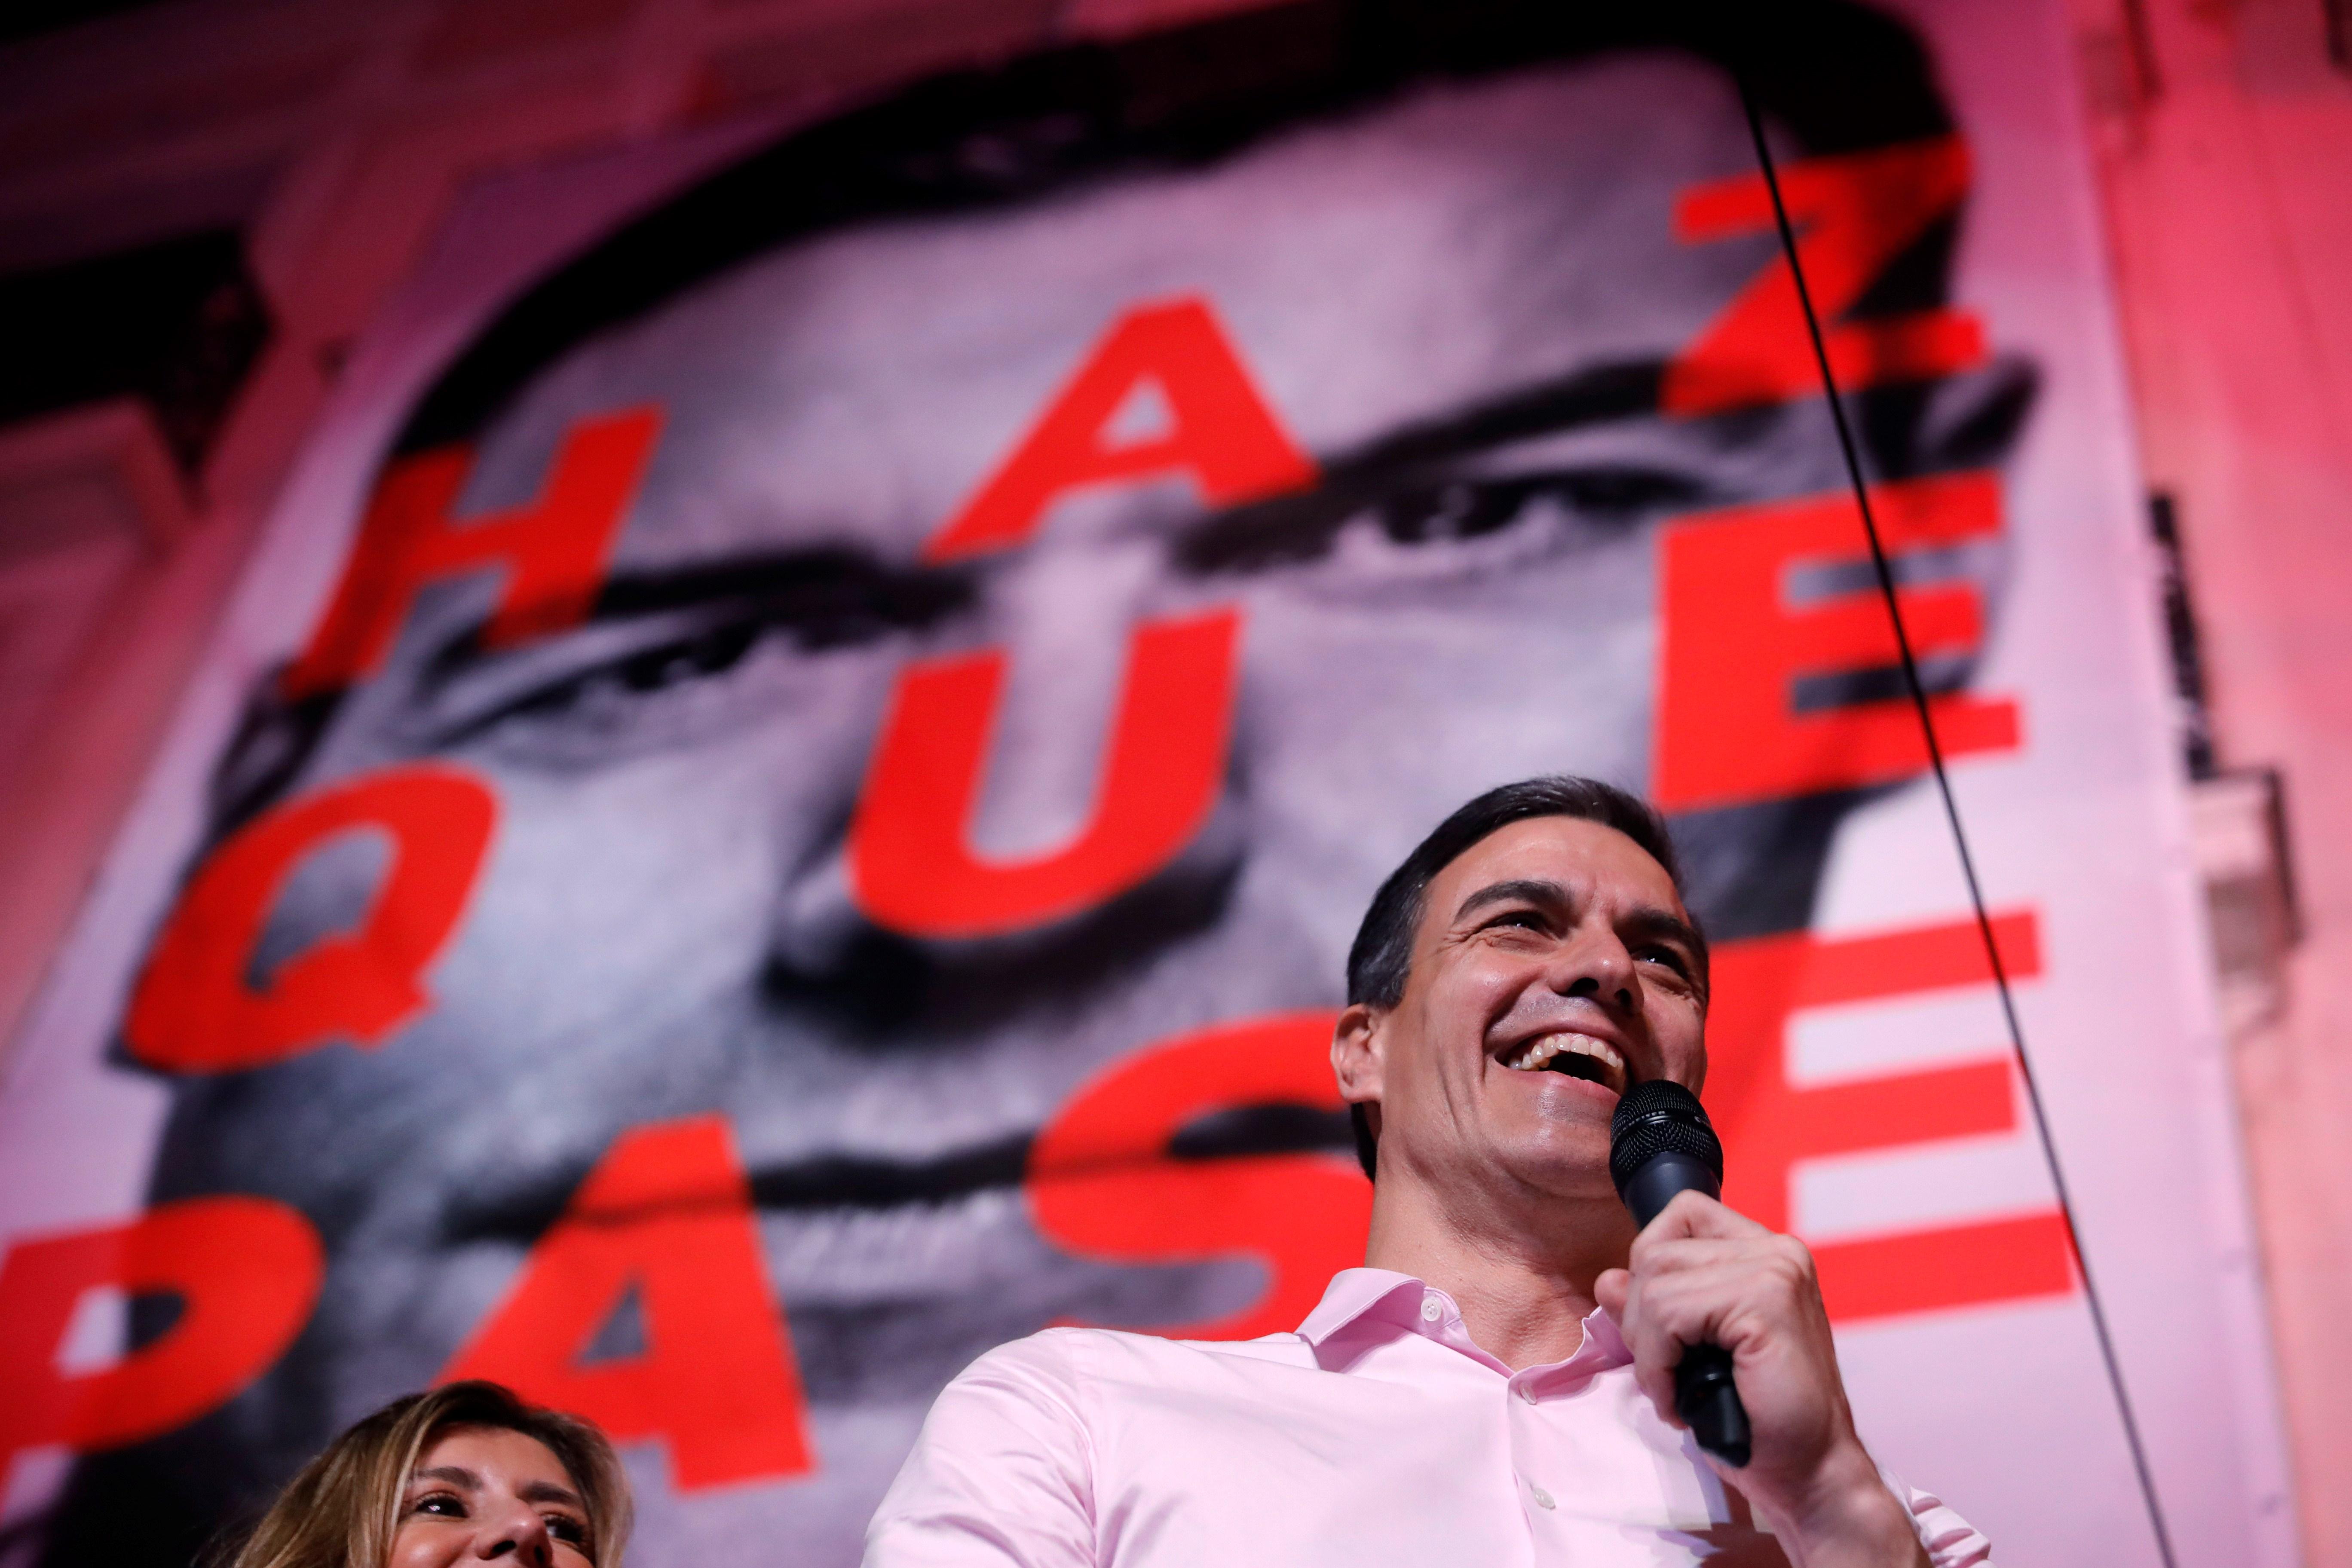 Sánchez surt reforçat i pot triar nou soci de govern: també suma amb Rivera